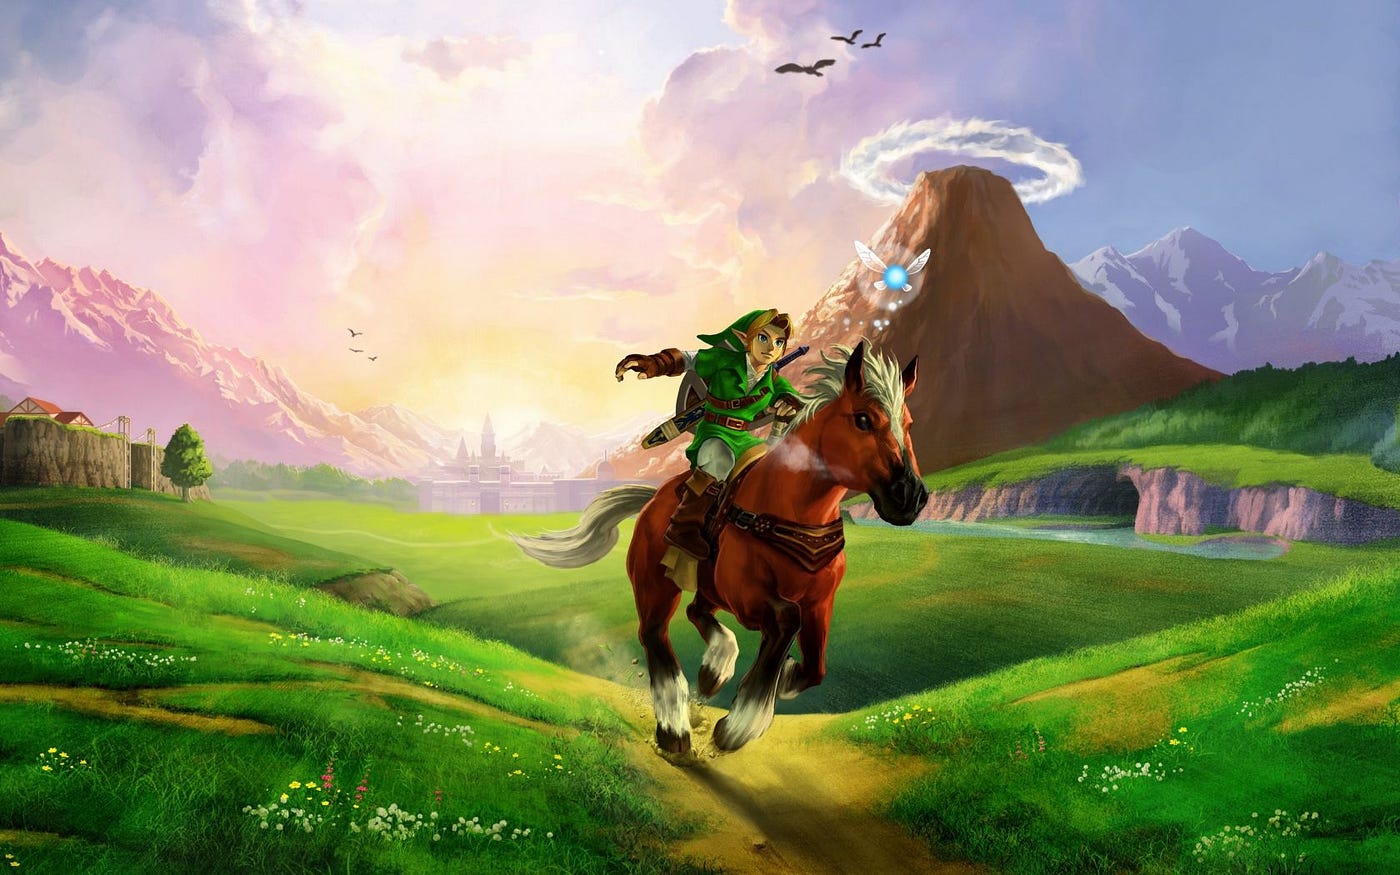 The Legend of Zelda: Ocarina of Time - Nintendo 64 (1998) : r/nostalgia